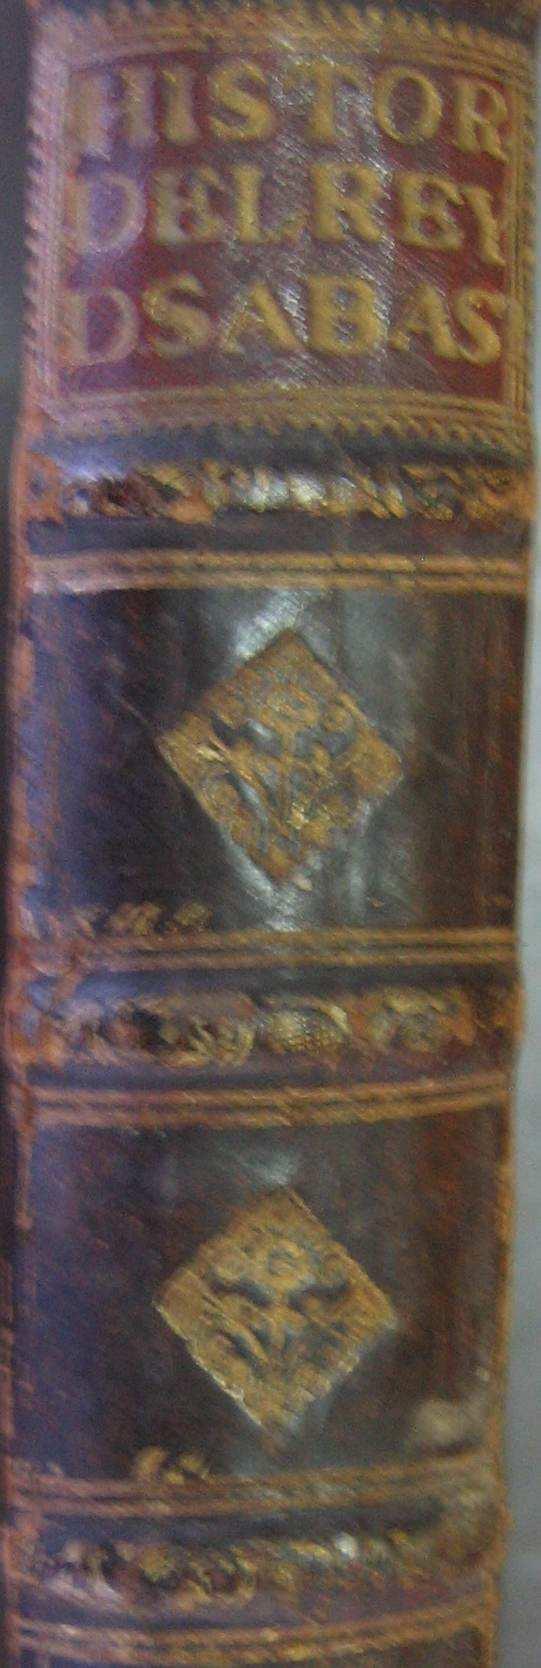 Profecias de um ermitão de Nª. Sr.ª de Monserrate, em 1603, (texto em espanhol). Segue-se um caderno de 12 fls.